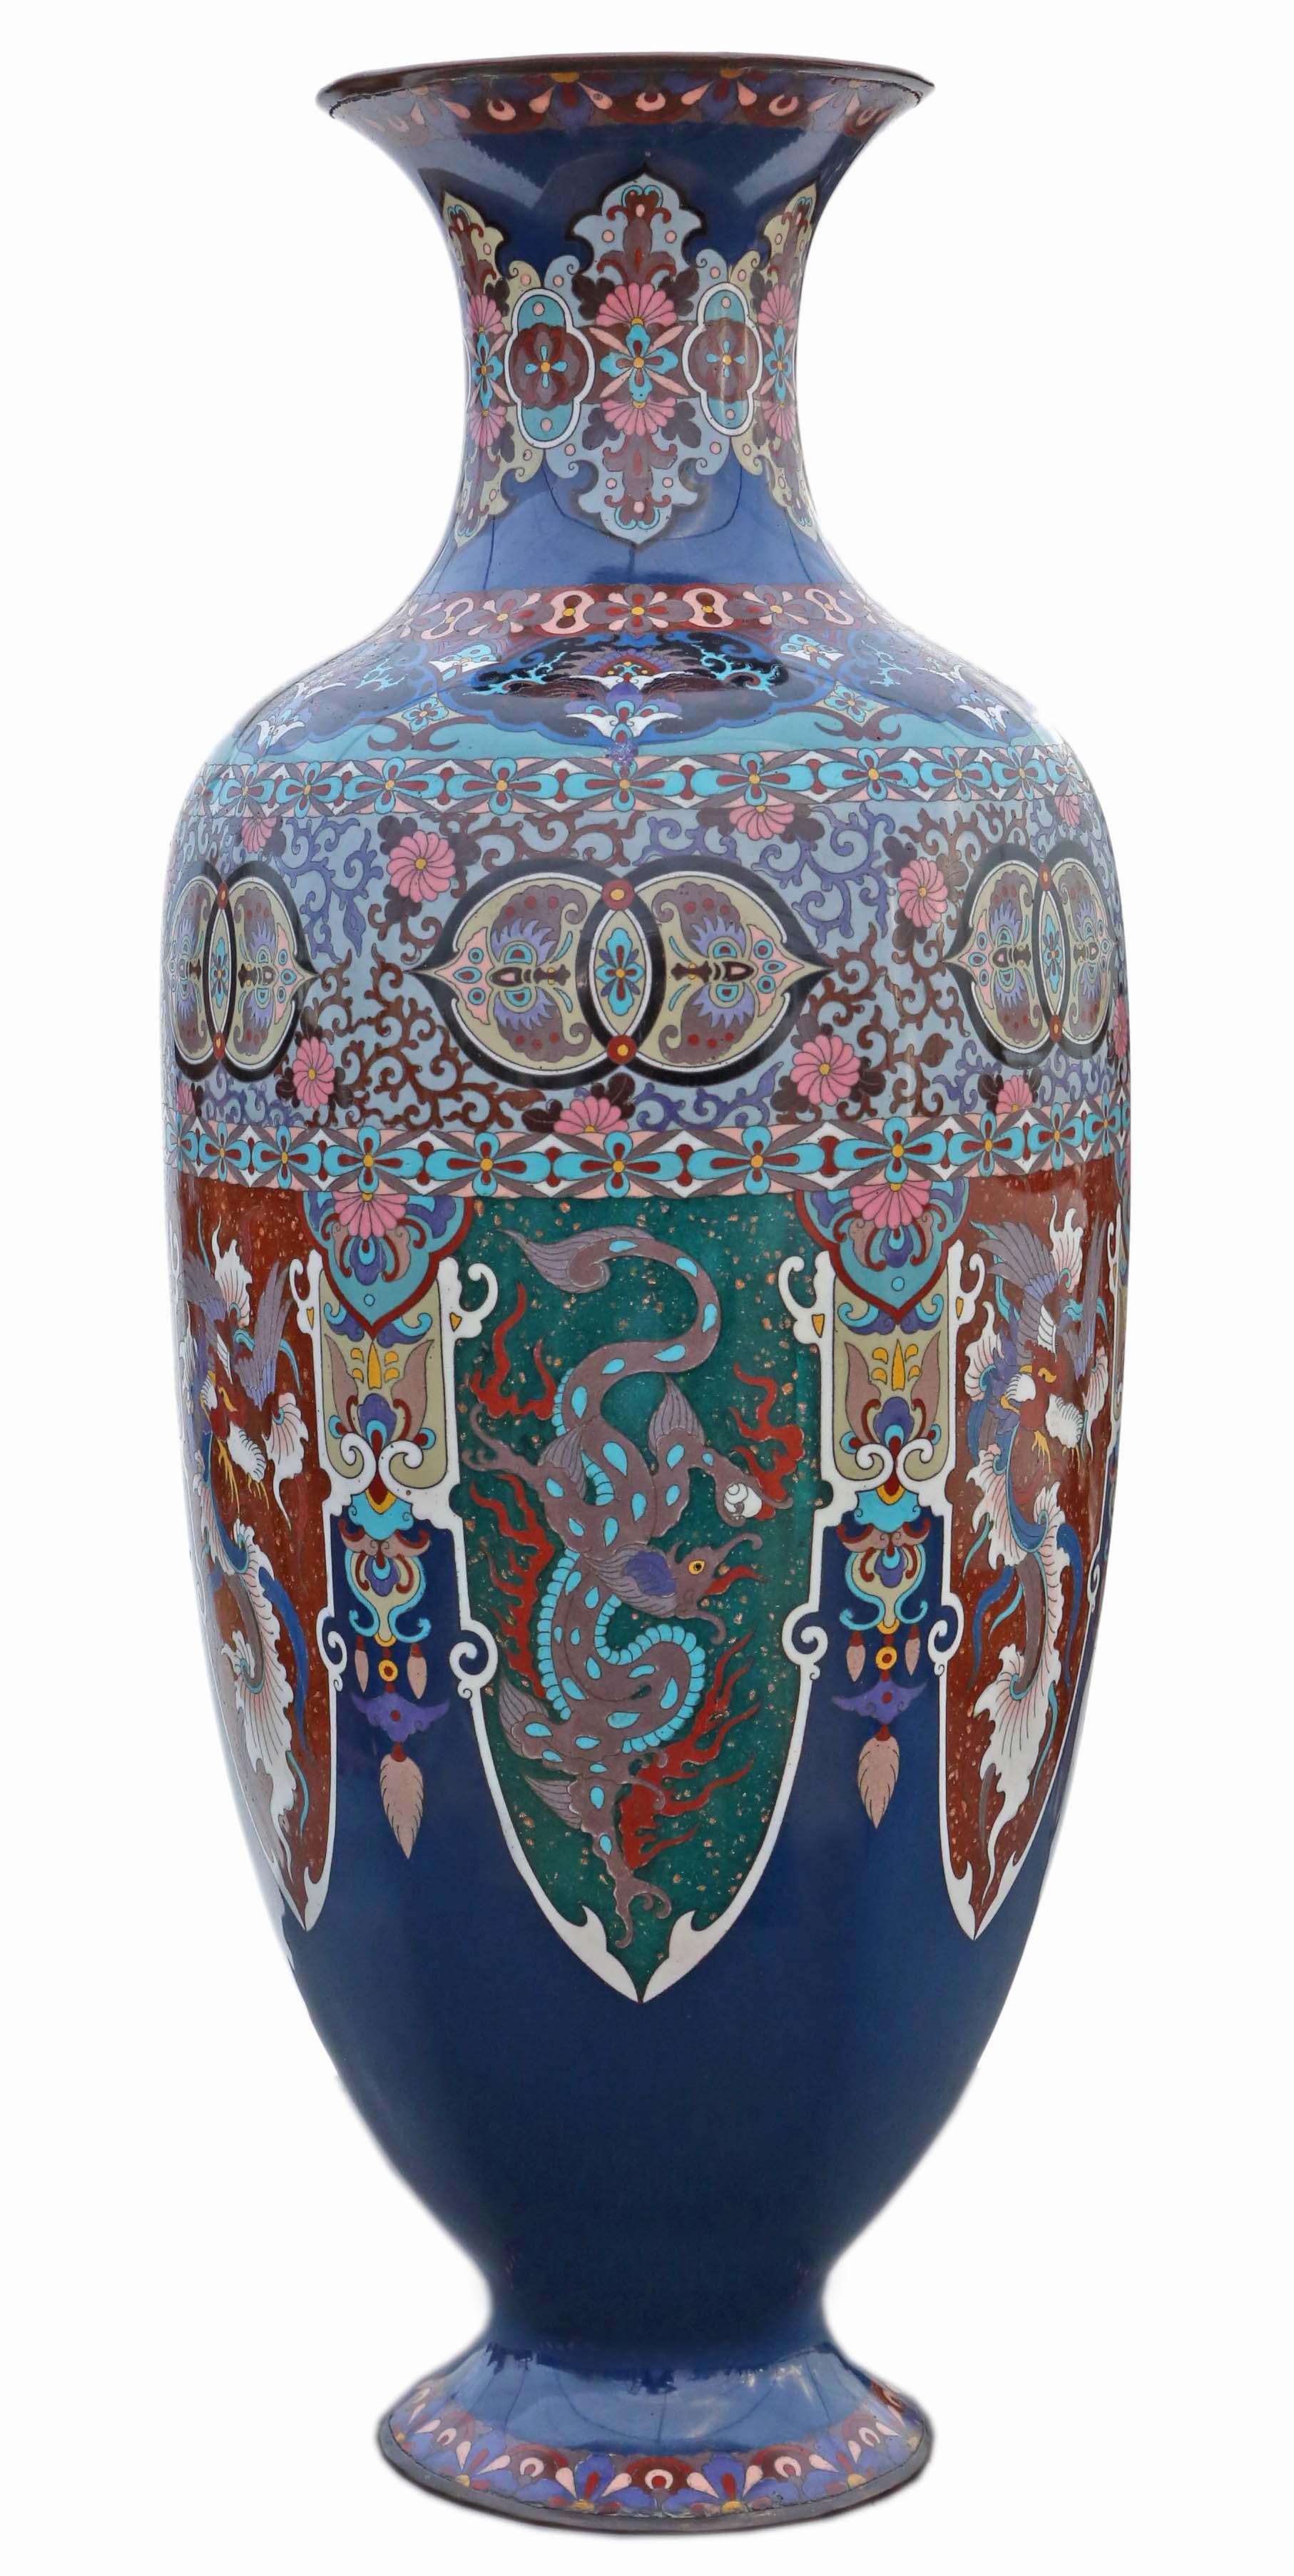 Vase cloisonné japonais oriental ancien du 19e siècle - Grande pièce impressionnante !

Ce superbe vase cloisonné du 19e siècle est le fruit d'un travail artisanal remarquable et de détails complexes. Fabriqué en laiton/bronze et orné de décorations